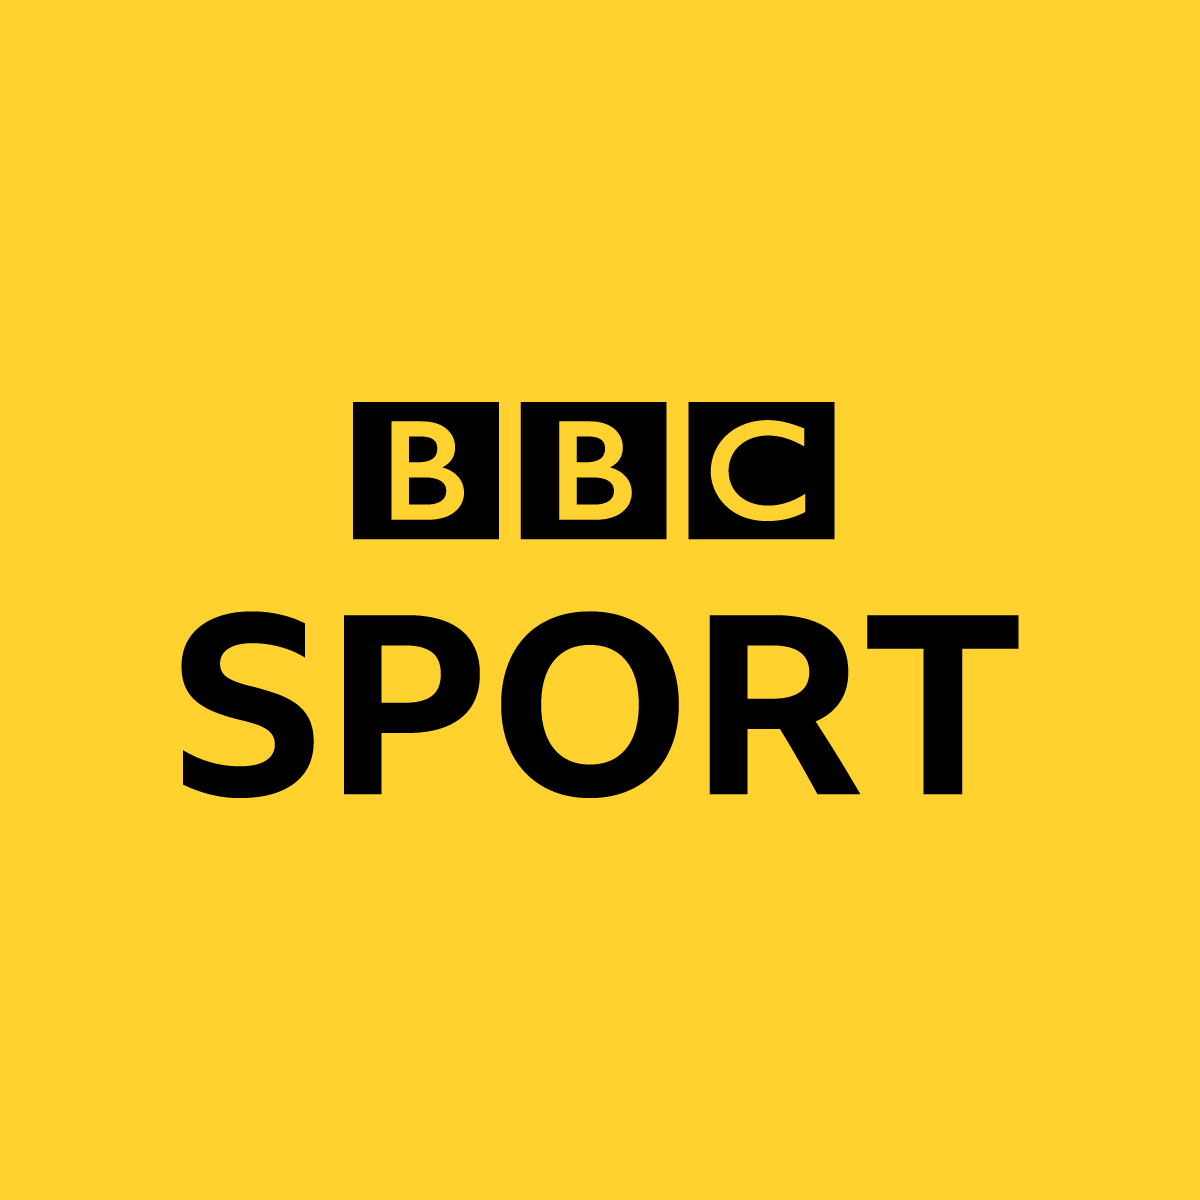 bbc sport champions league fixture